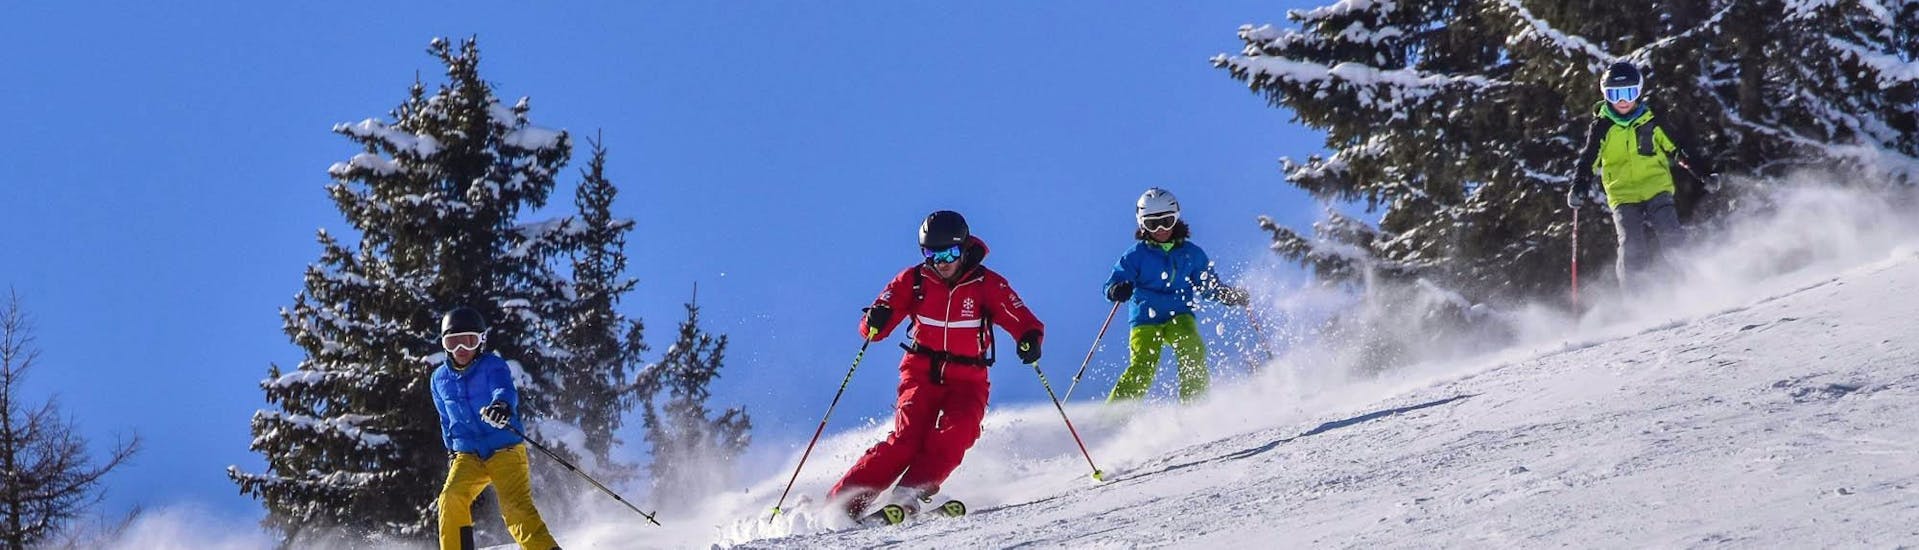 Skiërs tijdens de kinderskiles voor gevorderden bij skischool Jochberg.